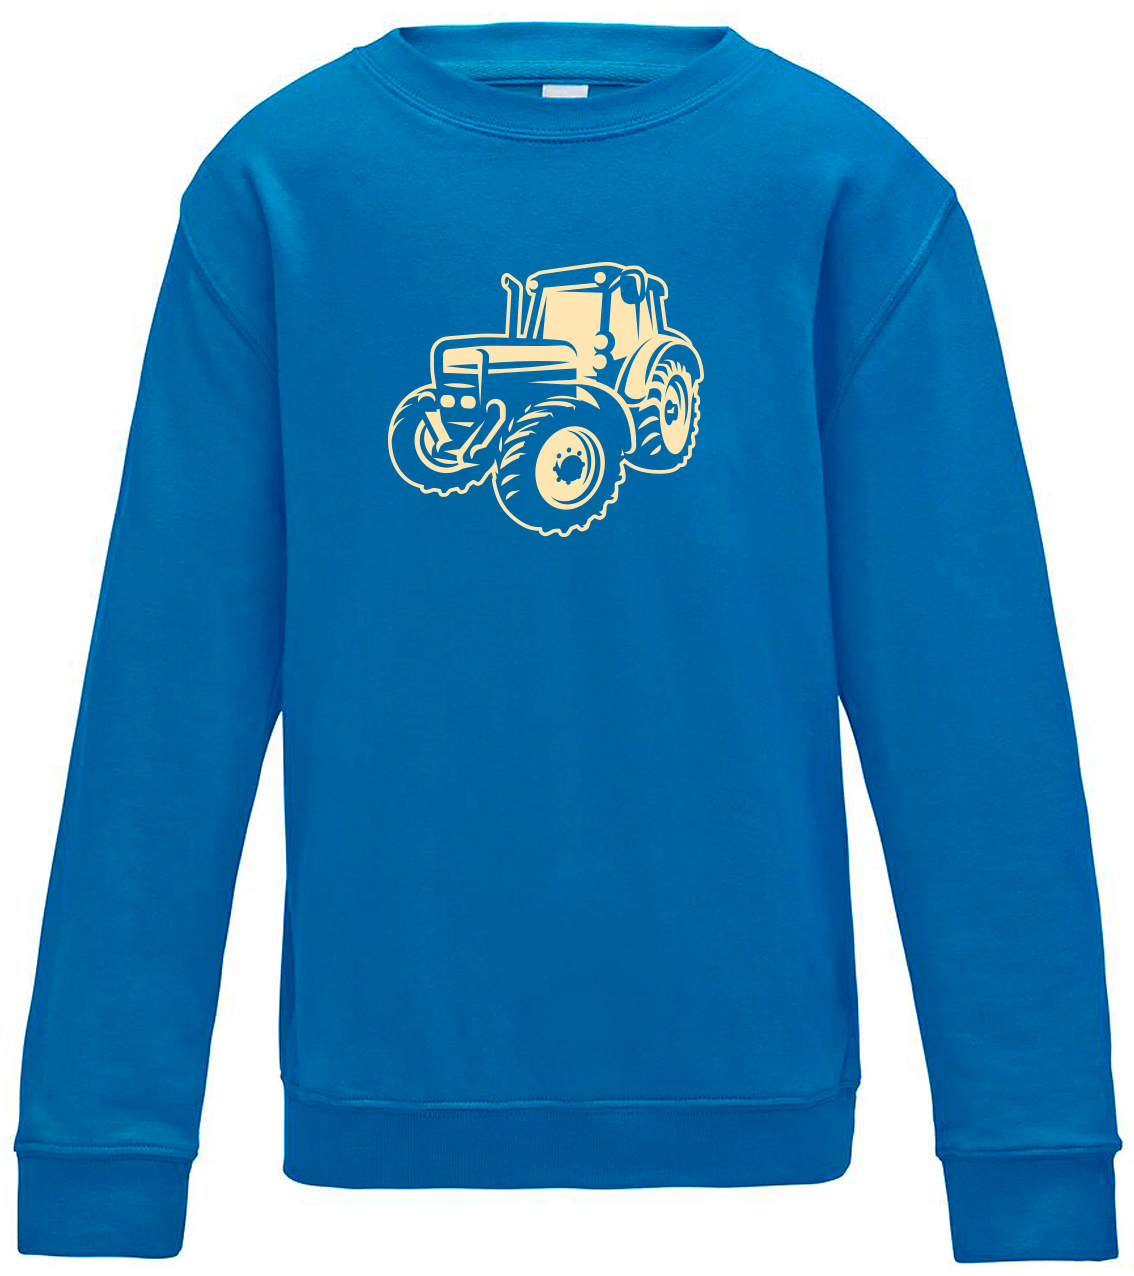 Dětská mikina s traktorem - Moderní traktor Velikost: 5/6 (110/116), Barva: Modrá